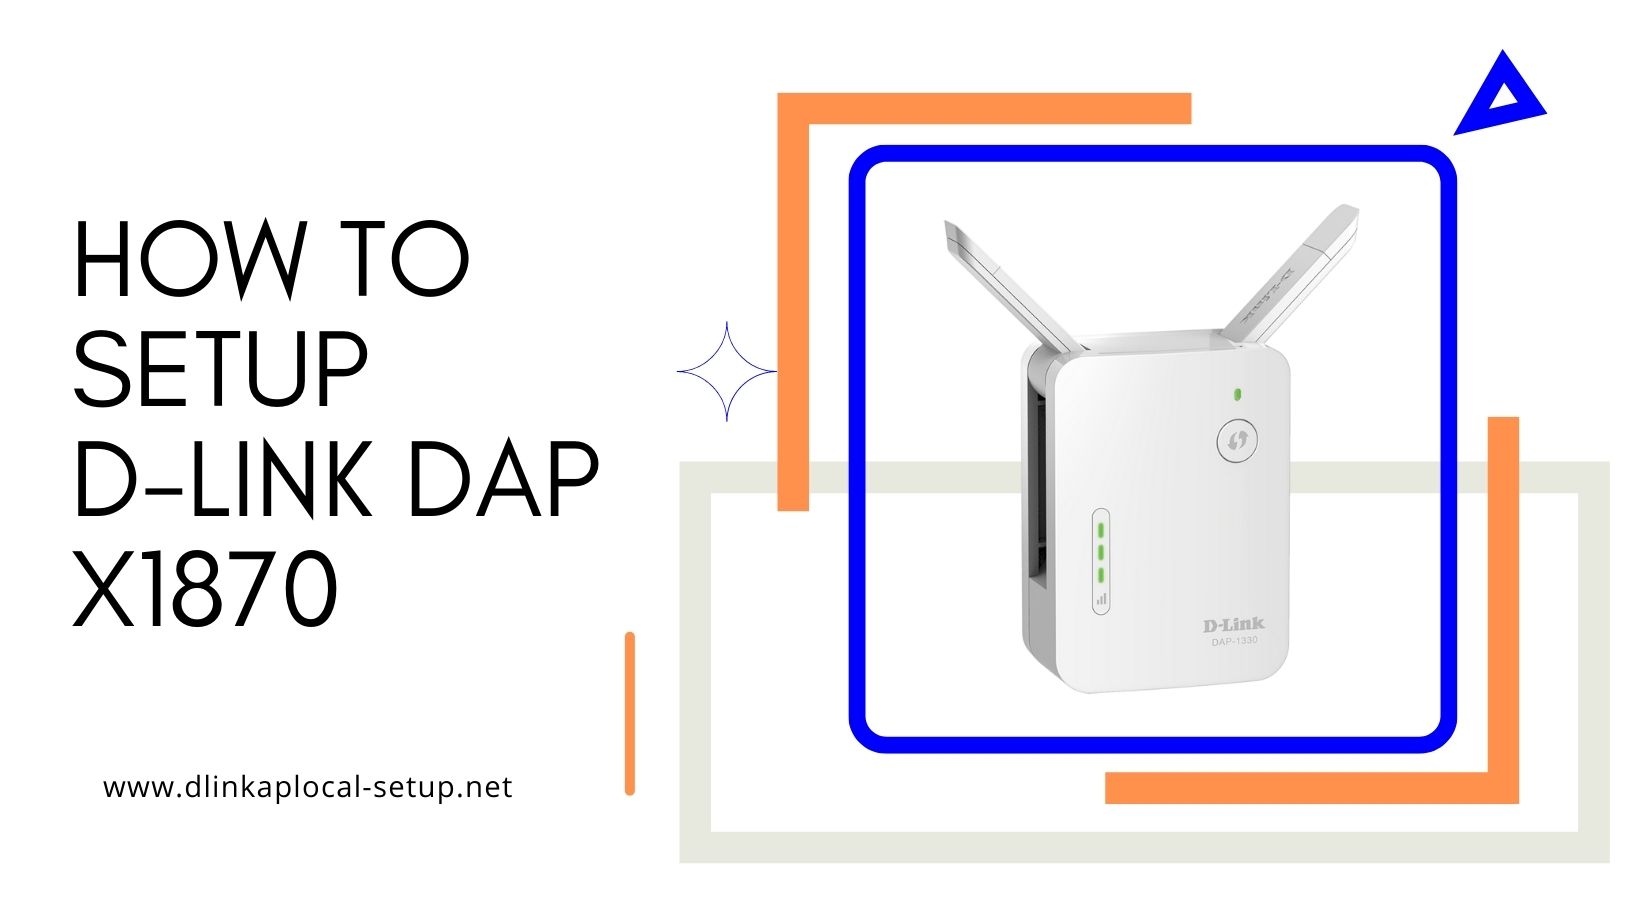 How to setup D-LINK DAP X1870